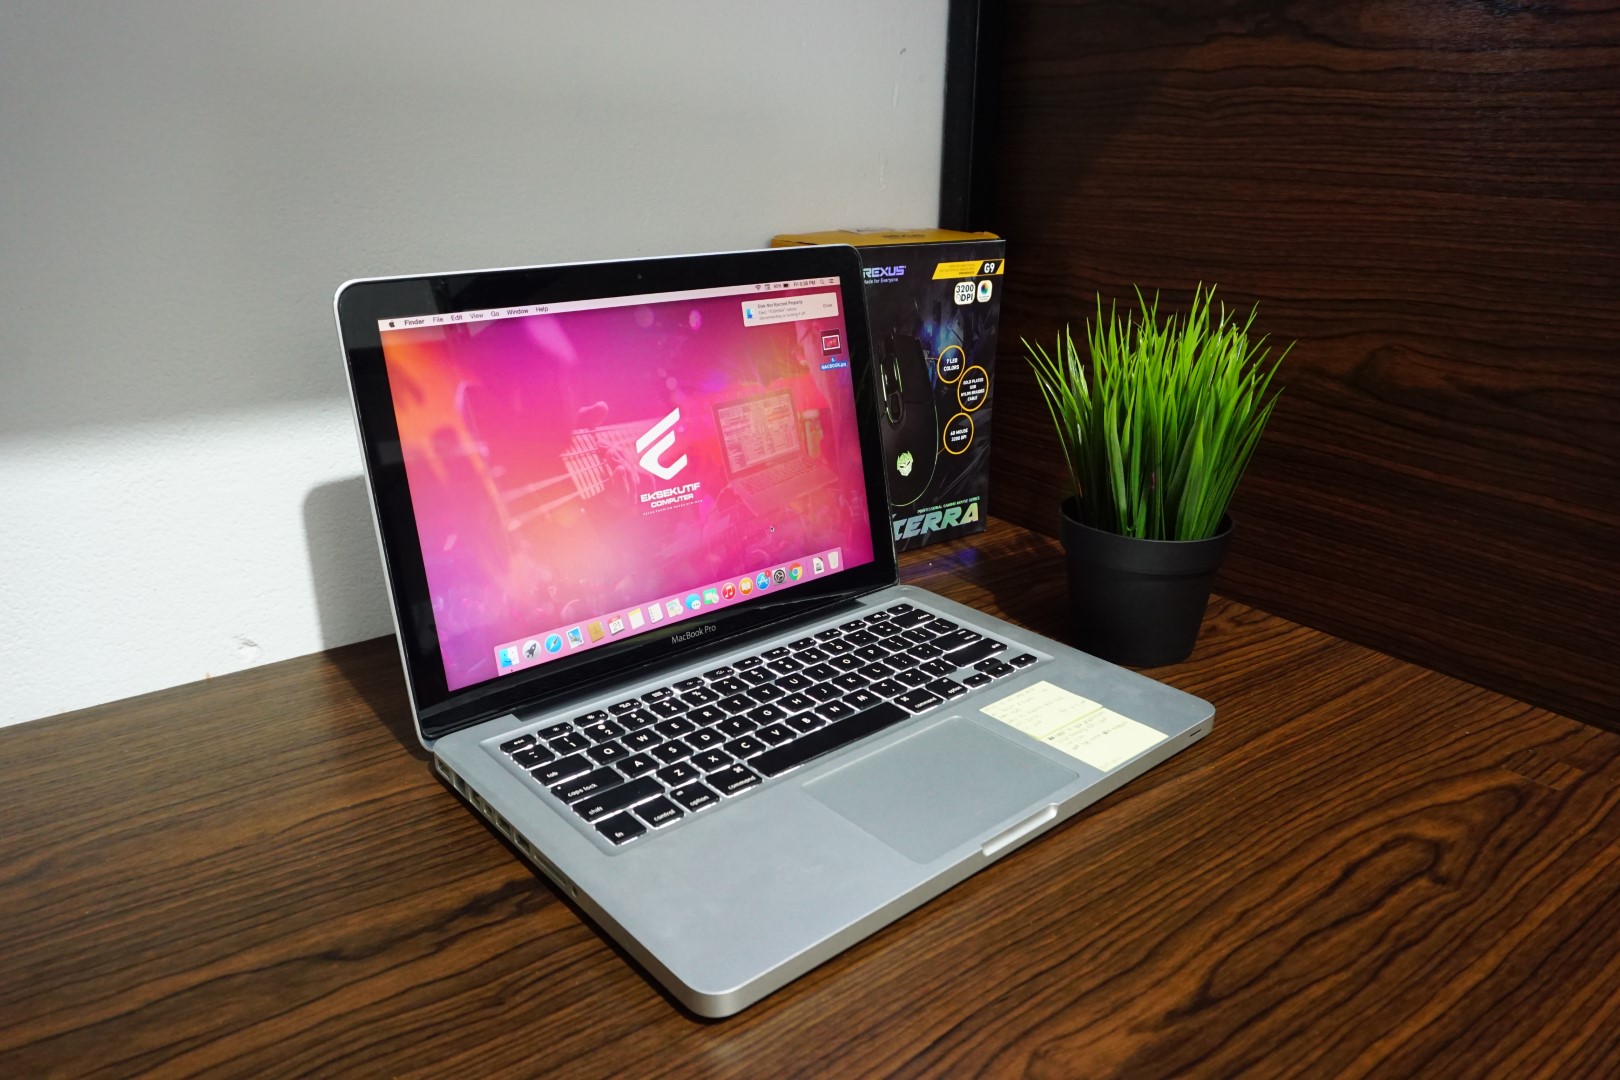 Harga dan Spesifikasi Macbook Pro MD101 | Review Laptop